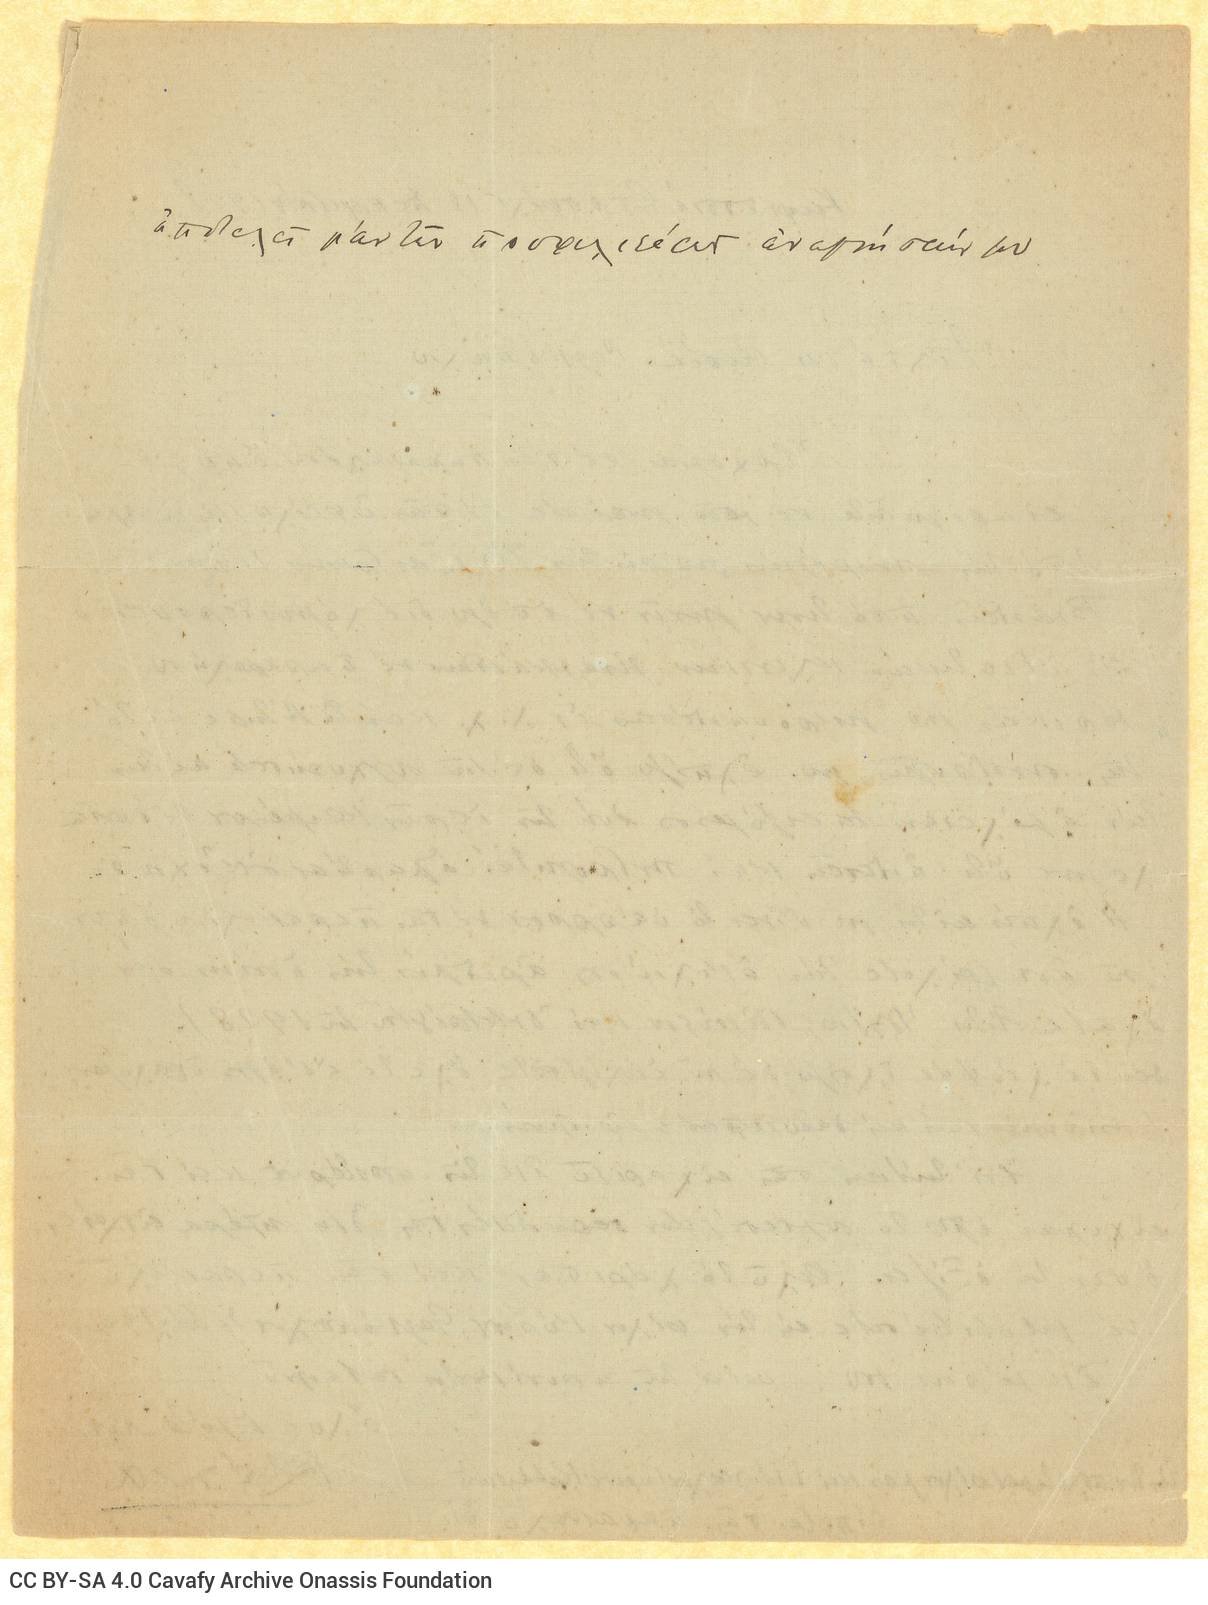 Χειρόγραφη επιστολή του Κωνσταντίνου Δέλτα προς τη Ρίκα Σεγκοπούλο�